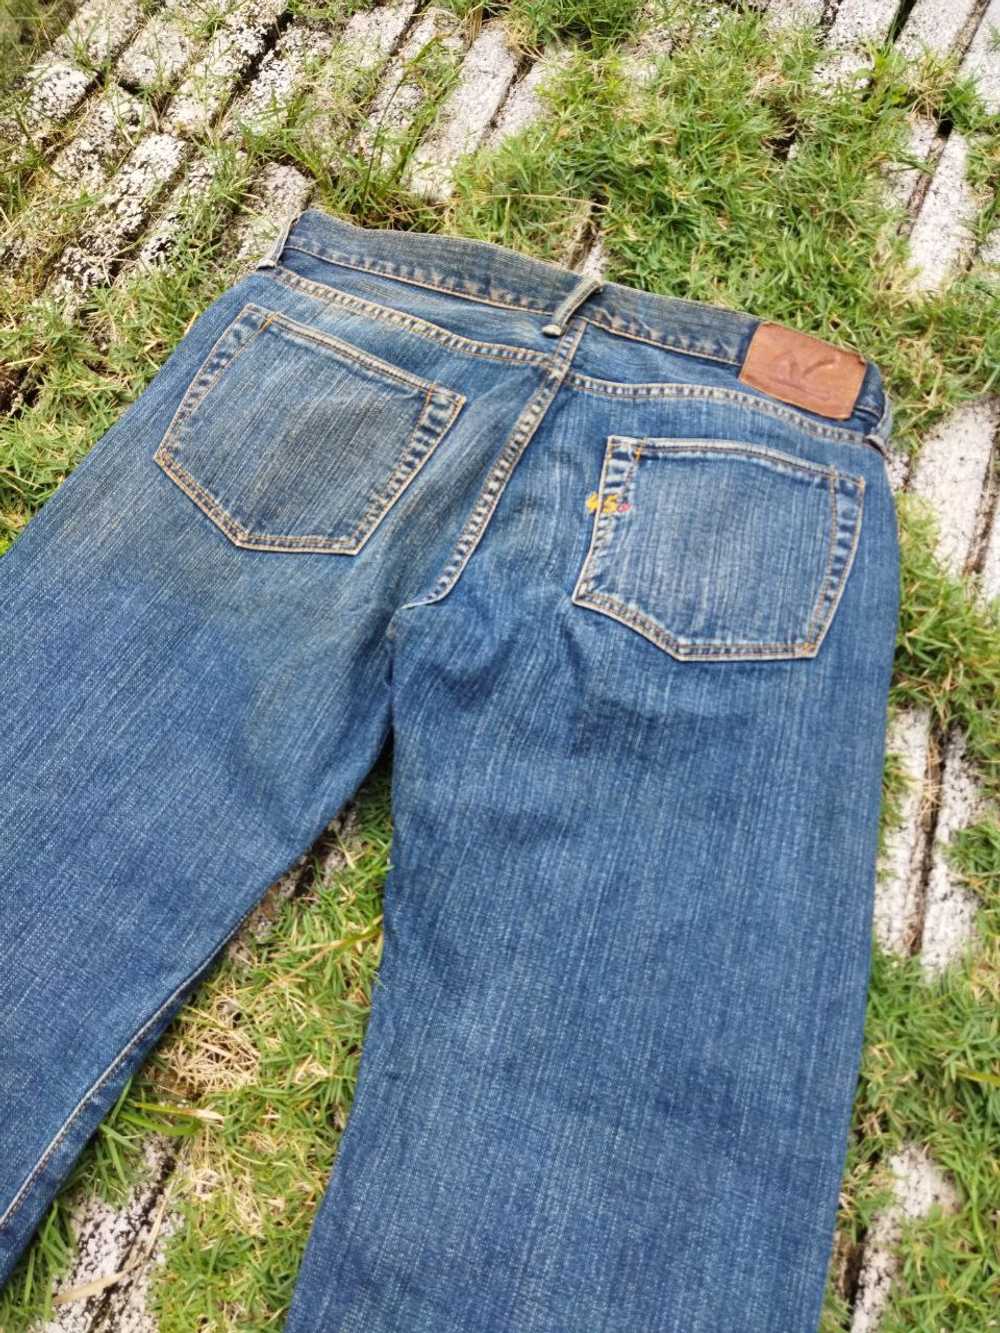 45rpm - Vintage 45rpm Japan Jeans - image 8